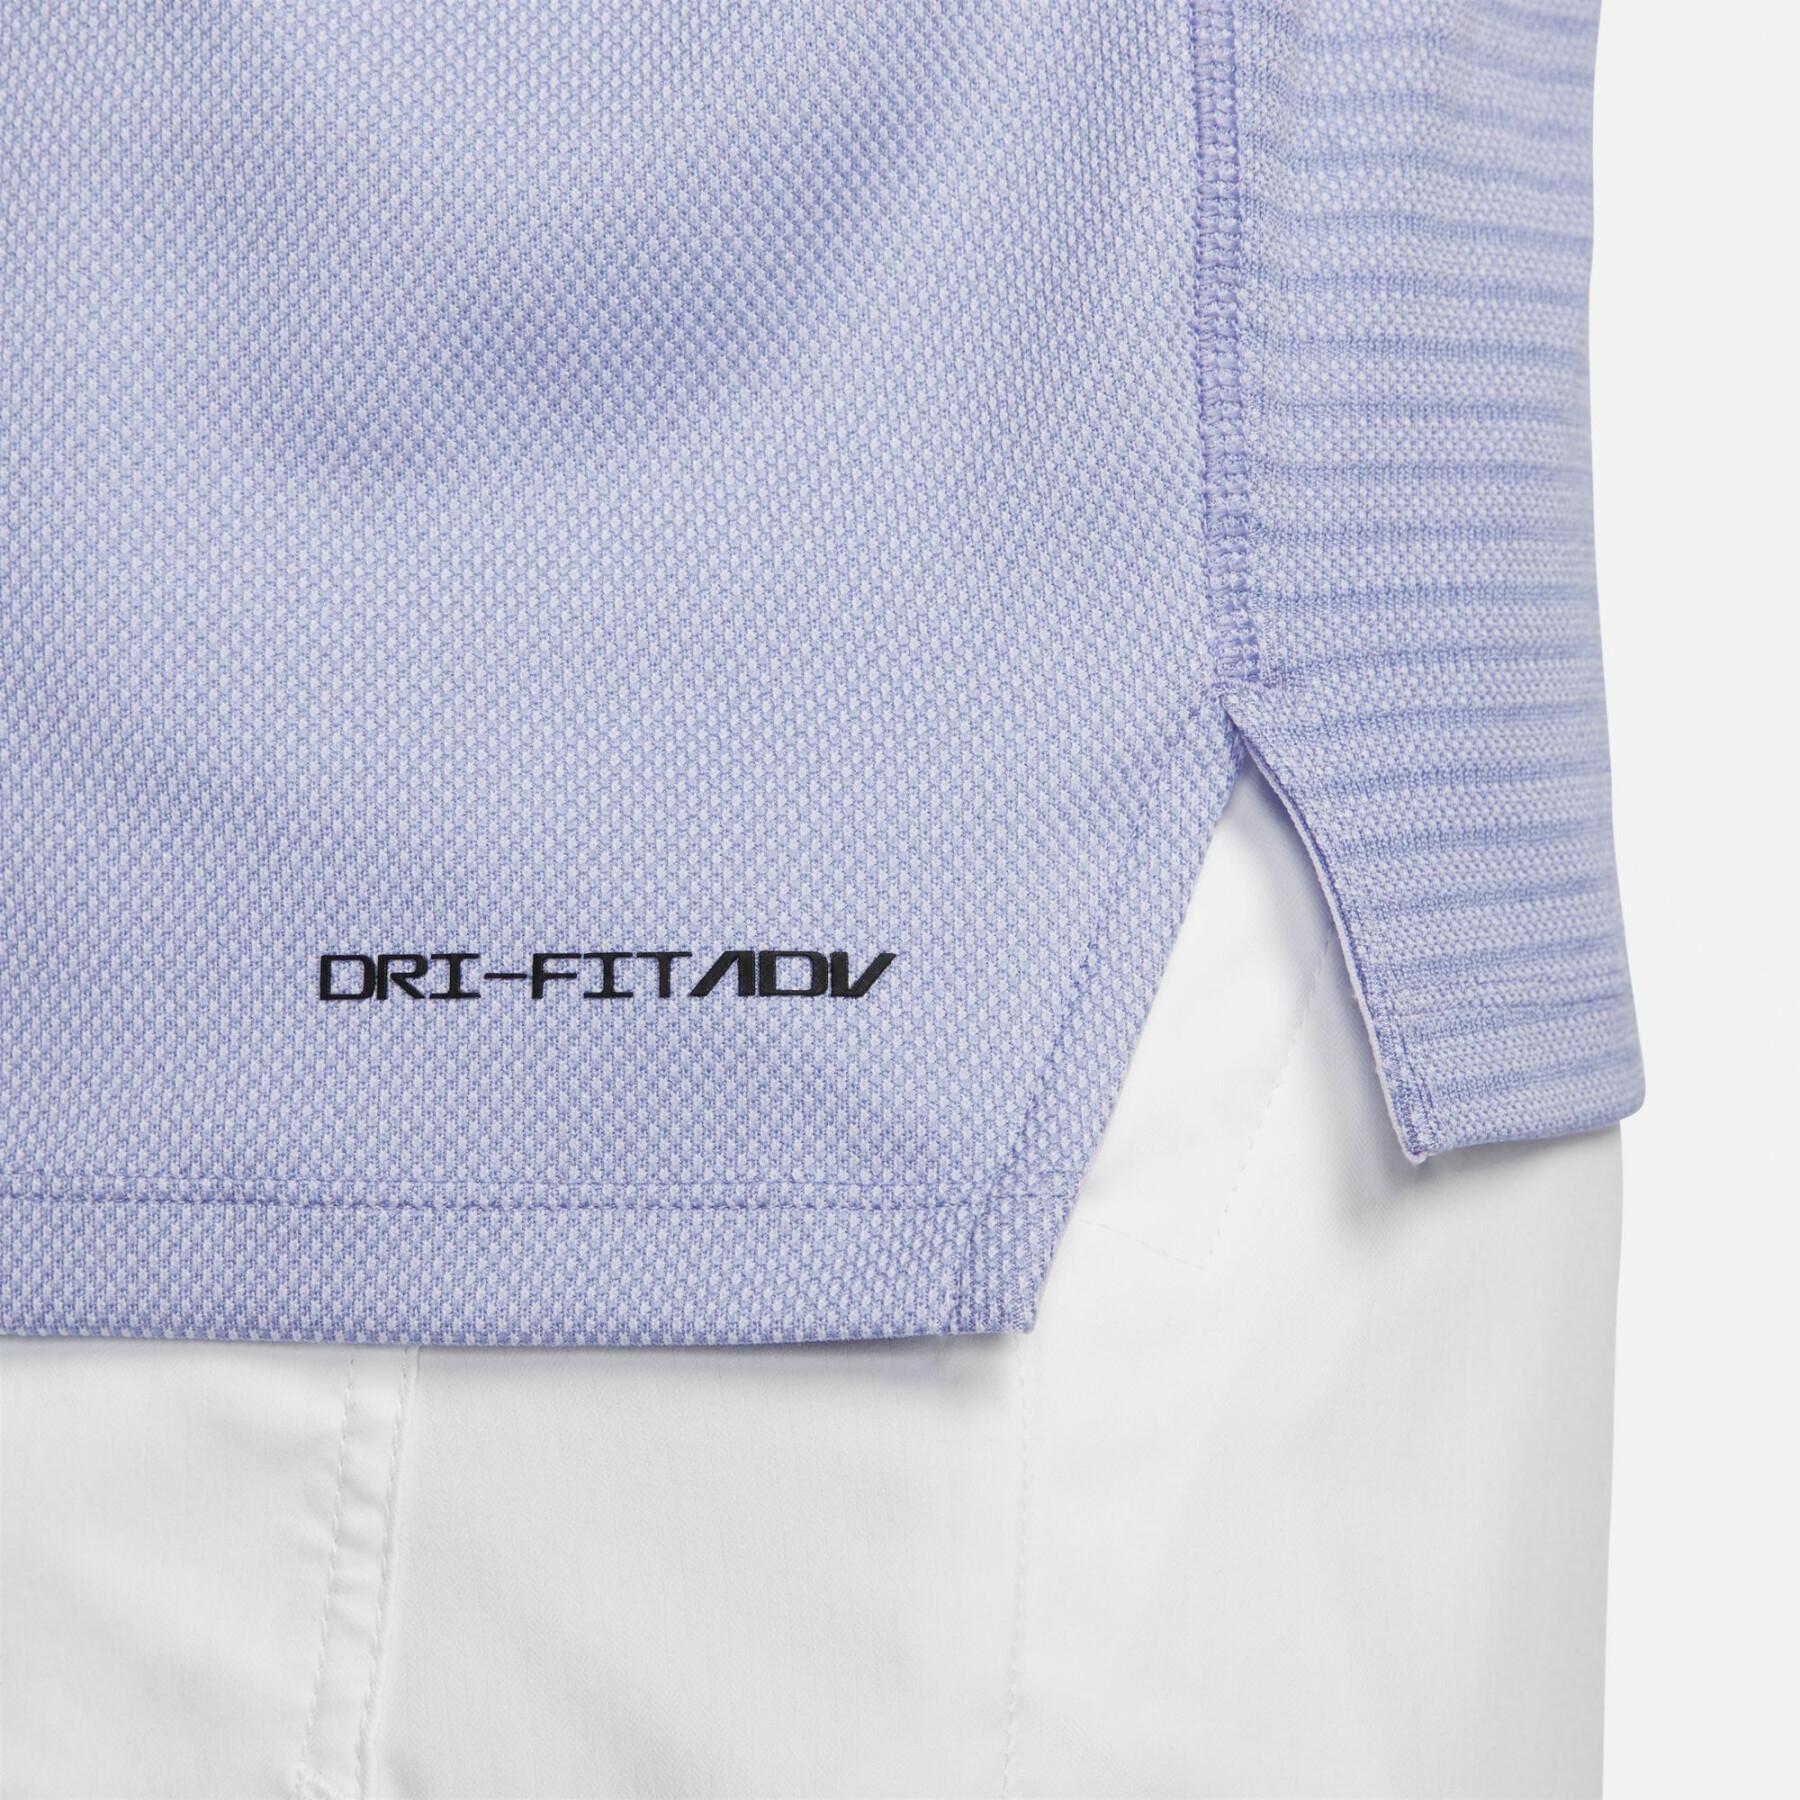 Sweatshirt mit viertel Reißverschluss Nike Dri-Fit ADV Vapor